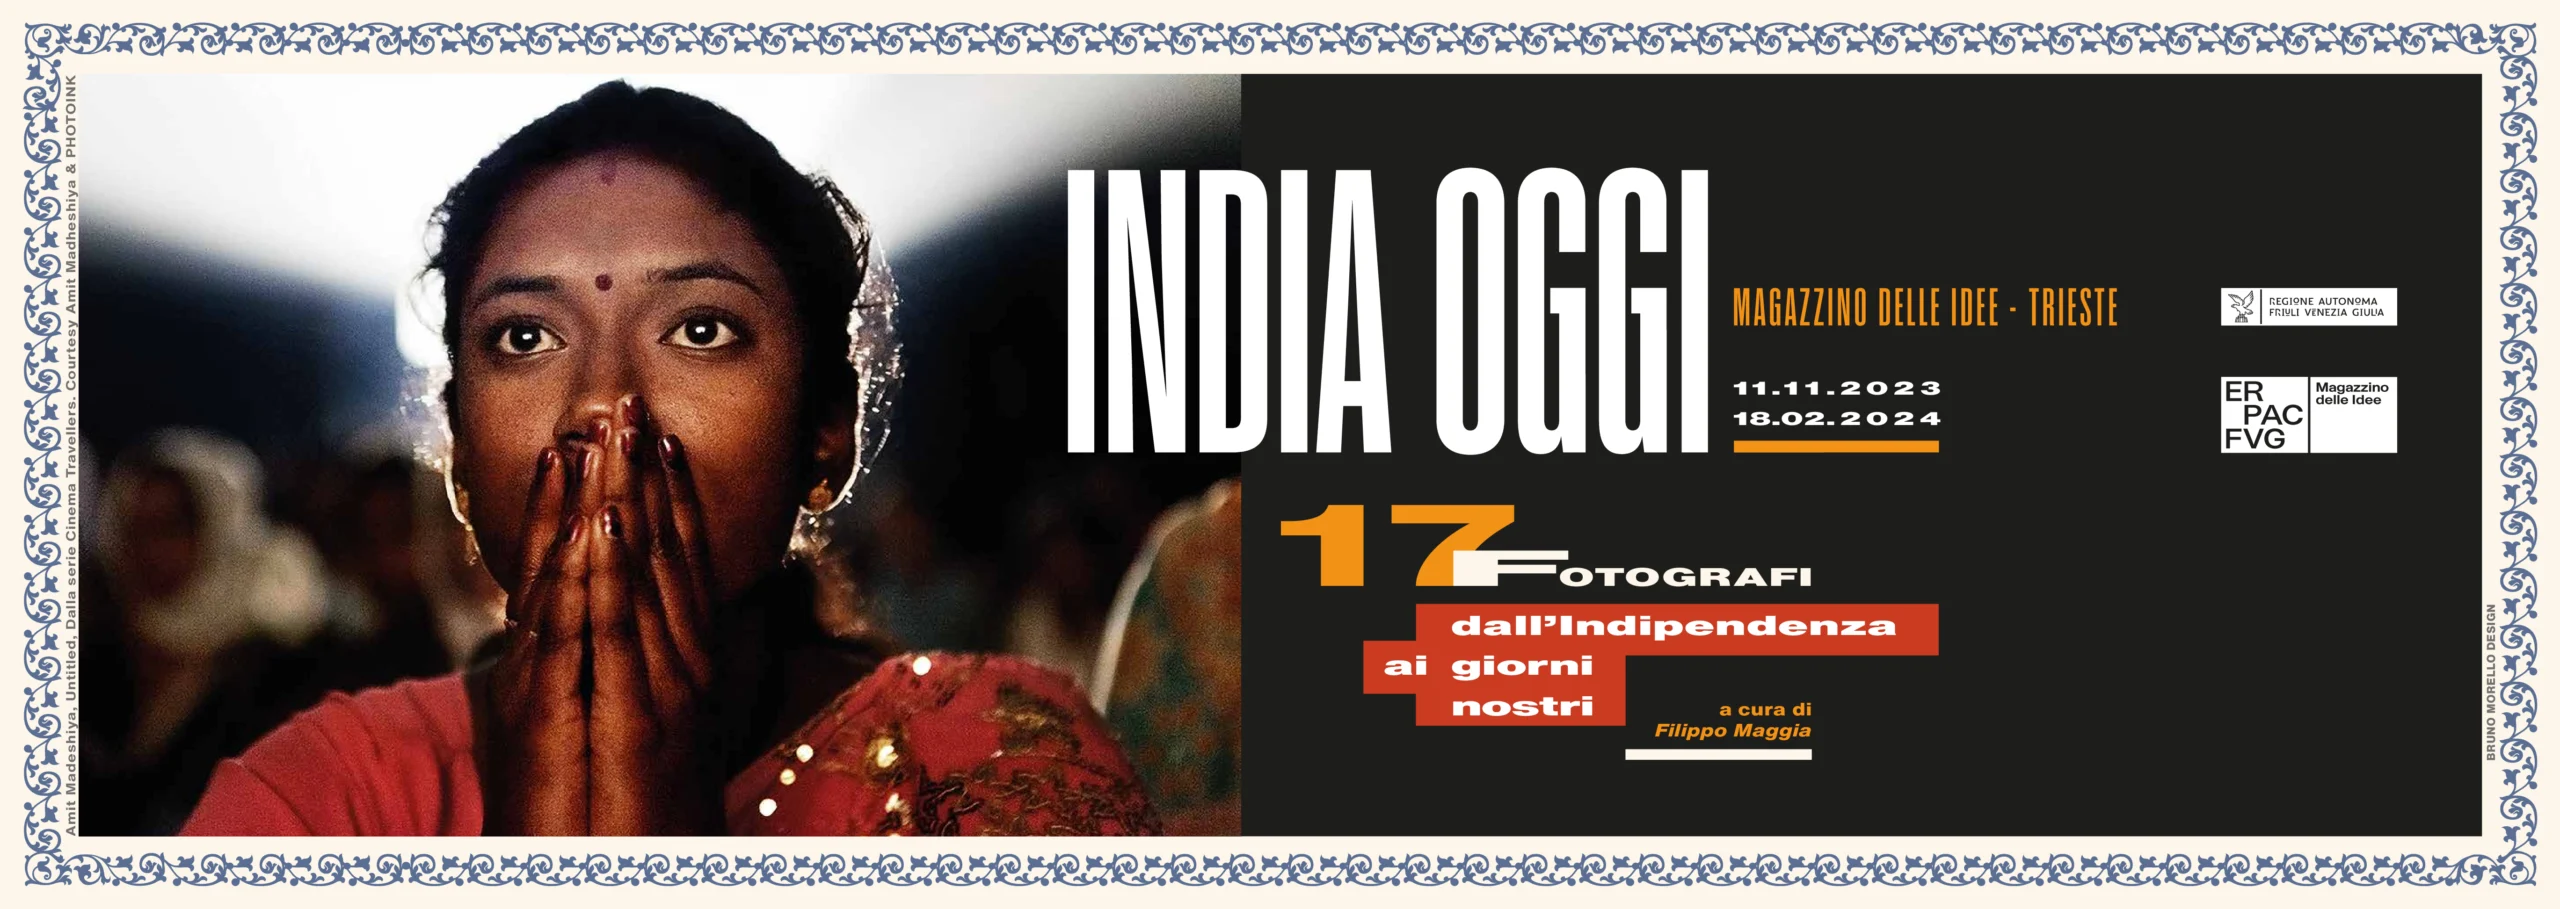 India oggi. 17 fotografi indiani in mostra al Magazzino delle idee di Trieste